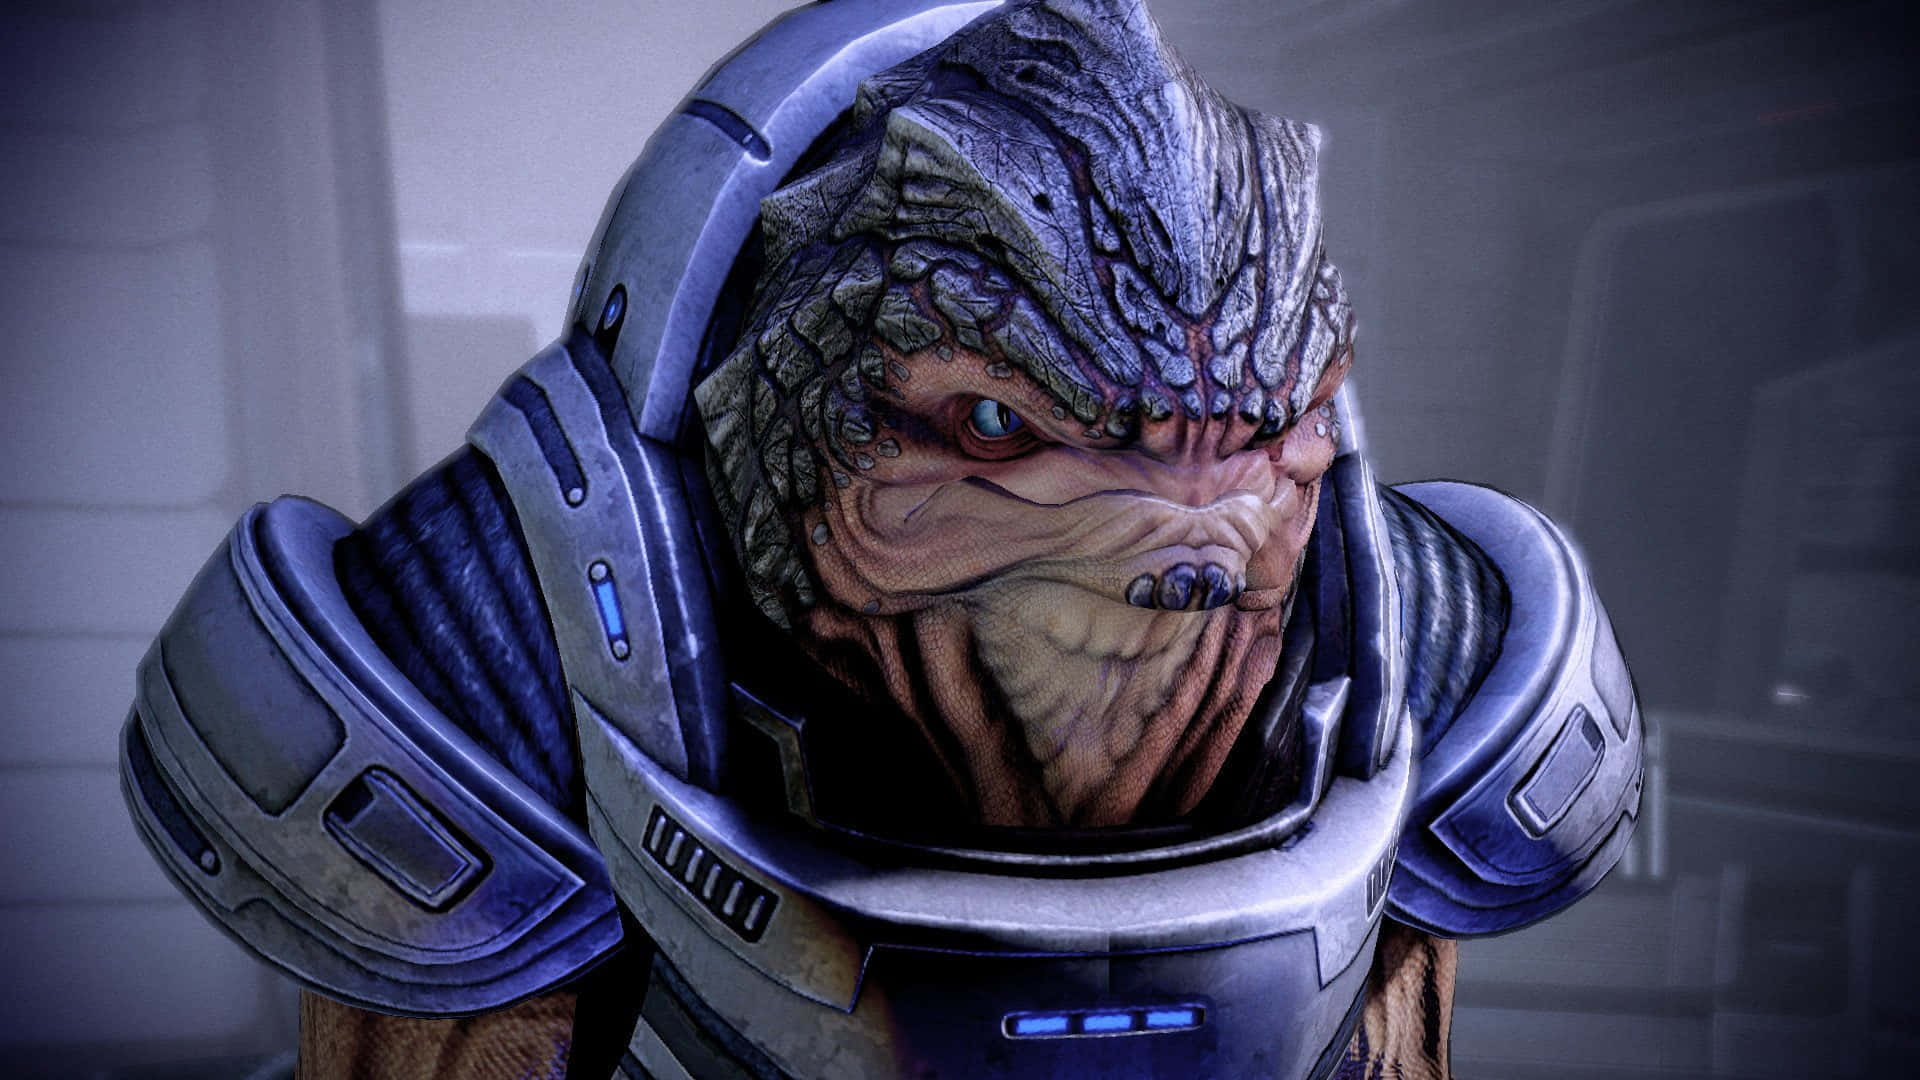 Ferocious Grunt from Mass Effect Wallpaper